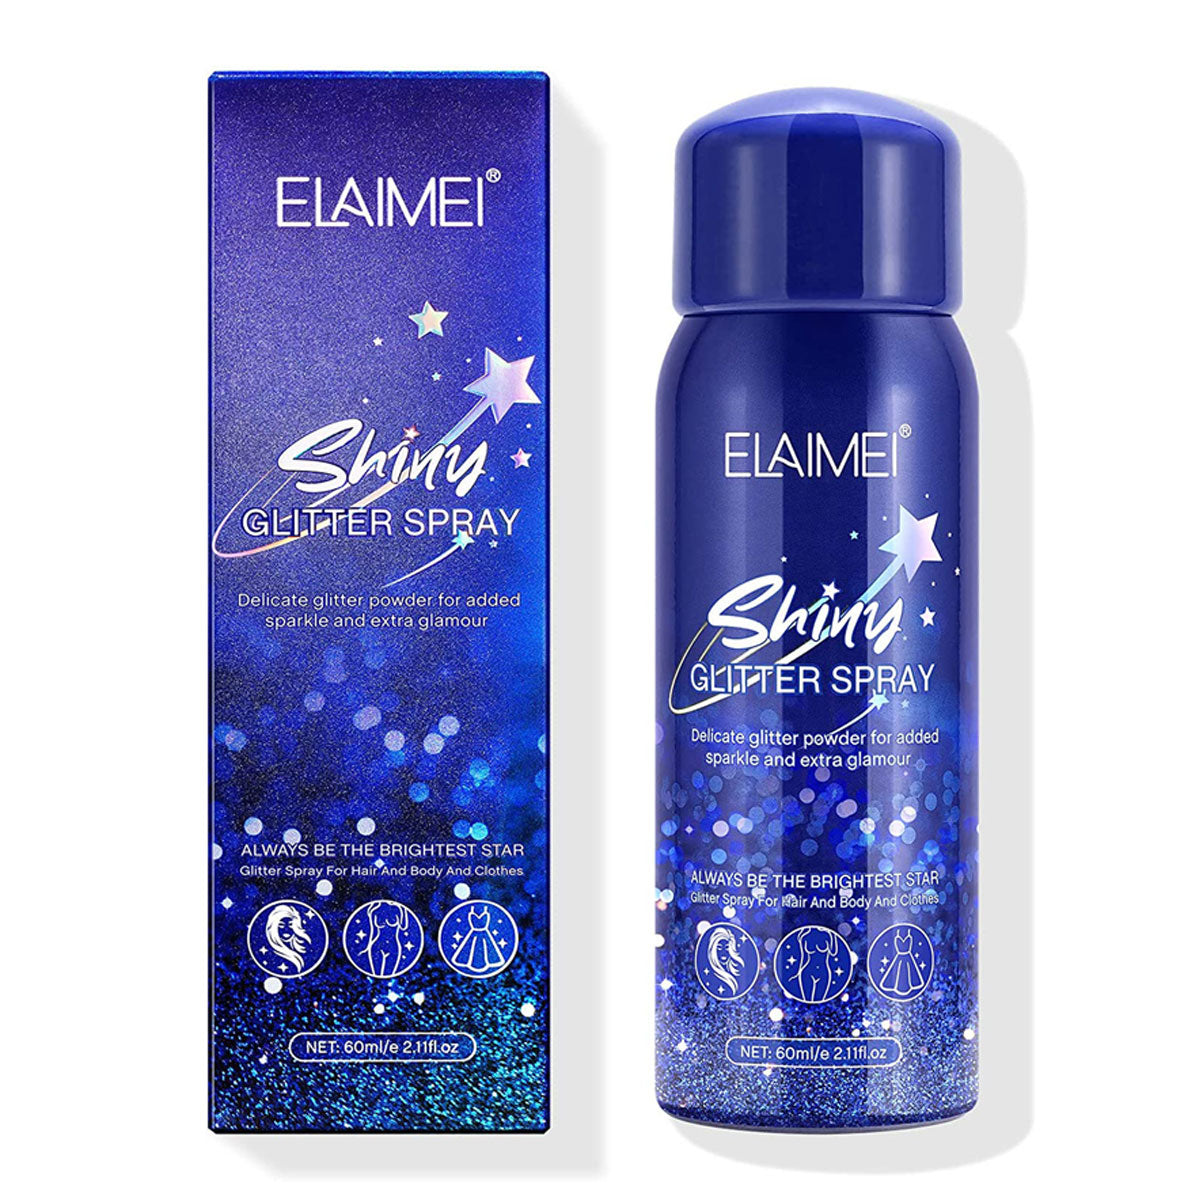 Shiny Glitter Spray, Body Glitter Spray, Hair Glitter Spray